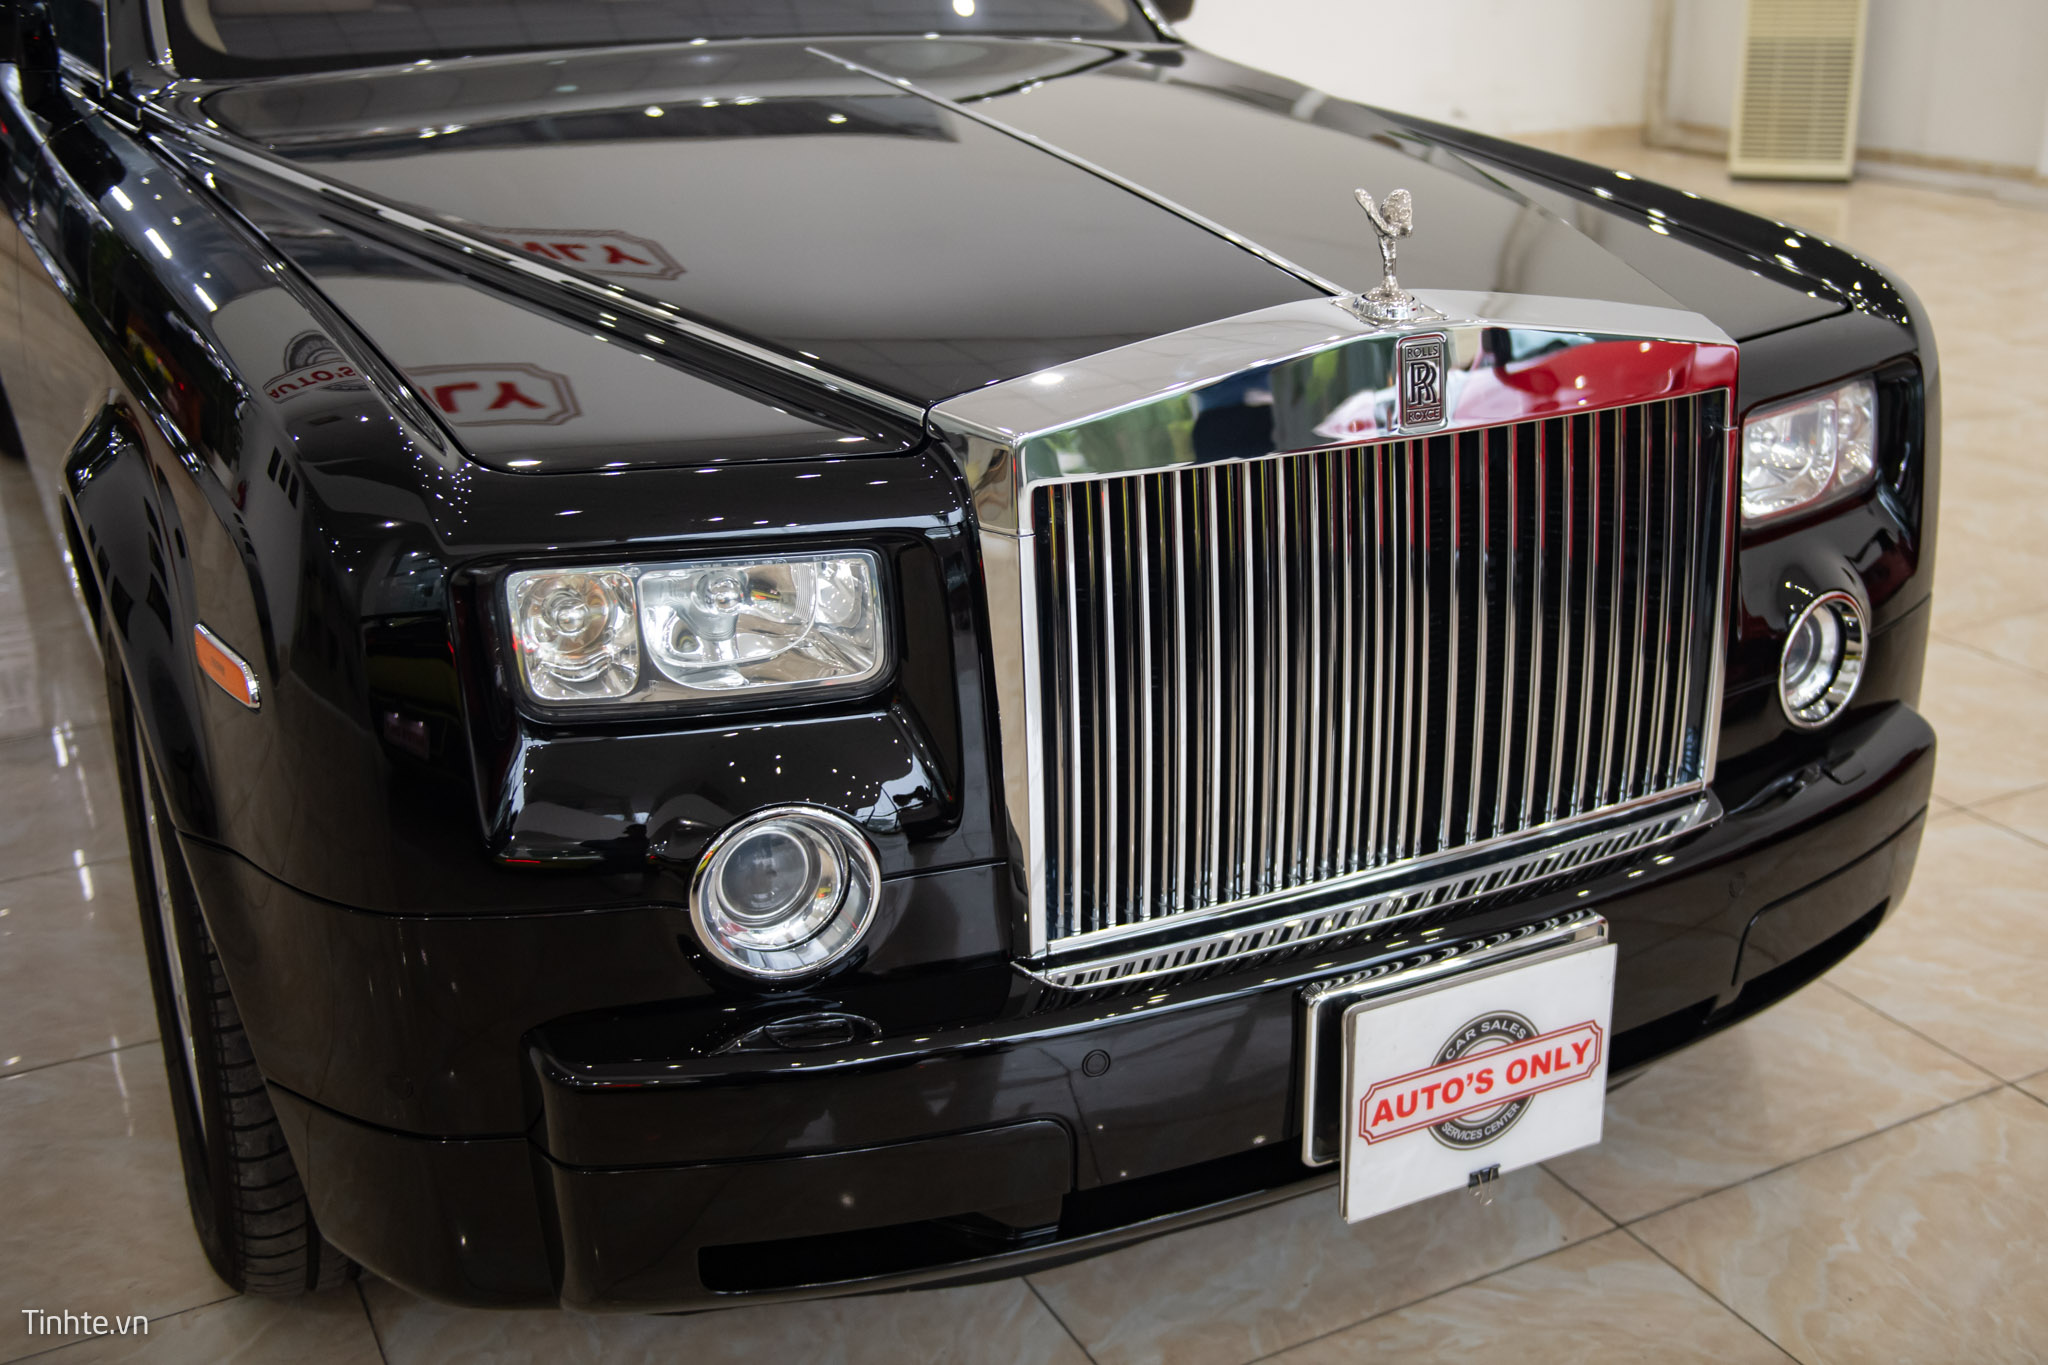 New Rolls Royce Phantom Photos Prices And Specs in Saudi Arabia